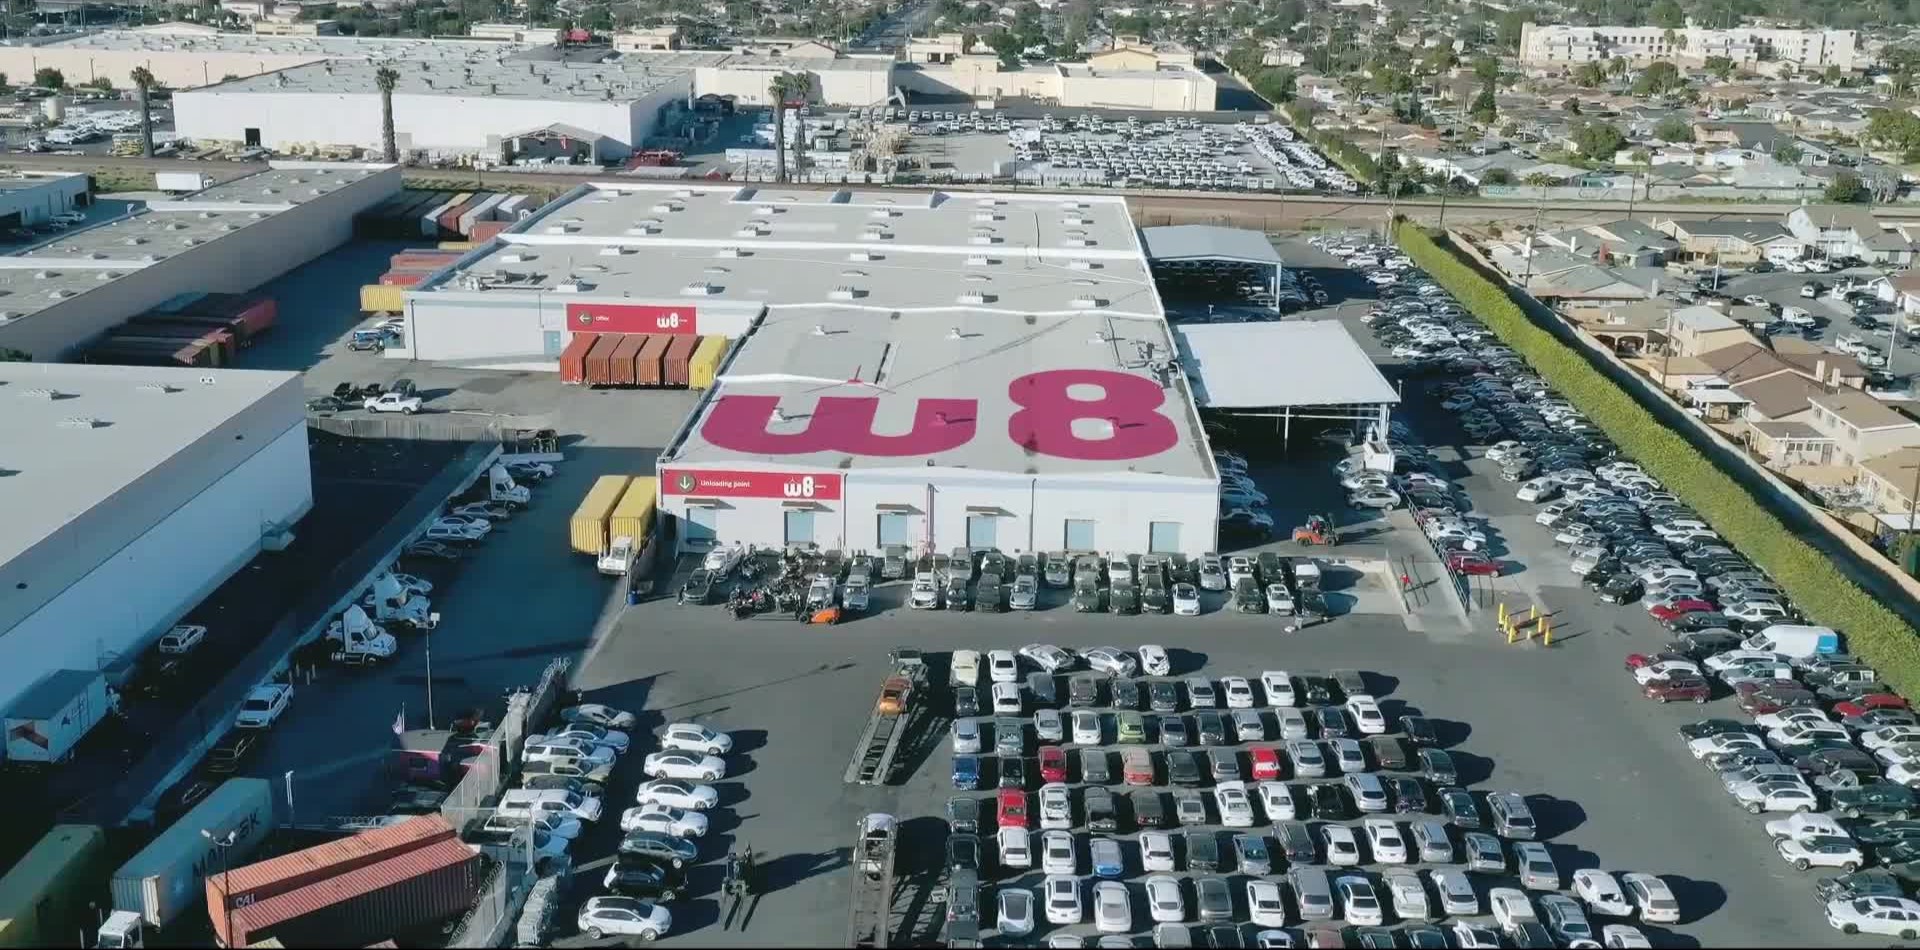 У центрі фотографії склад із великим логотипом W8 на даху та меншими логотипами над кількома входами. Навколо складу розташоване багато автомобілів, припаркованих на парковці.